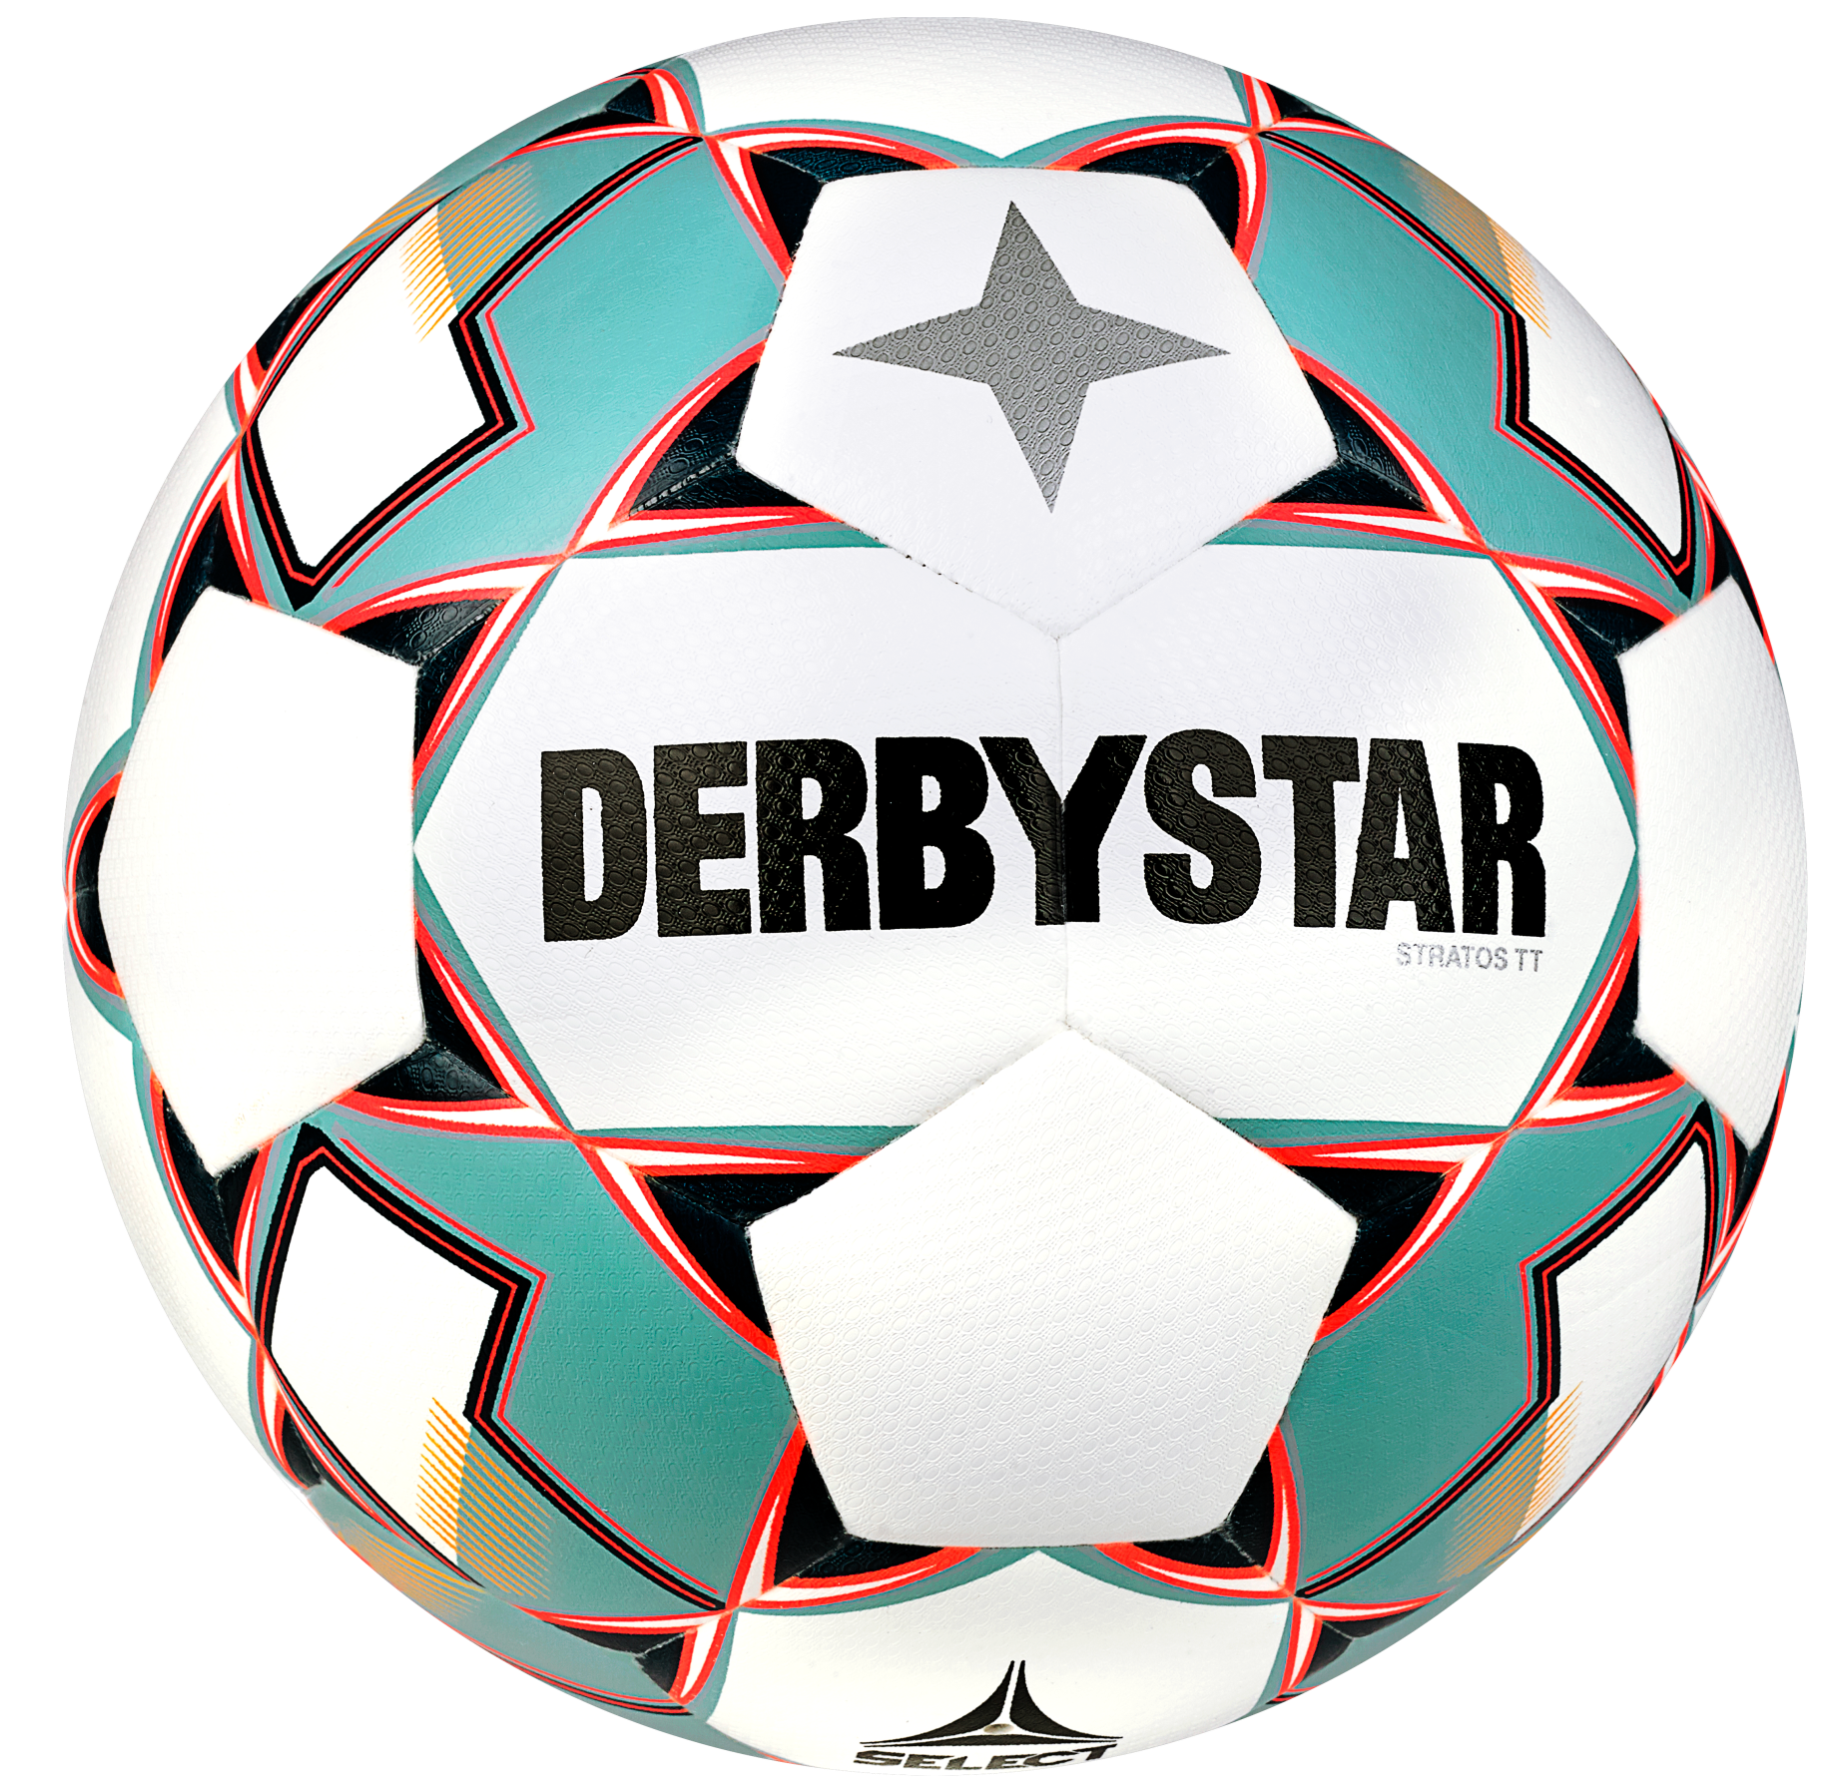 Lopta Derbystar Stratos TT v23 Trainingsball